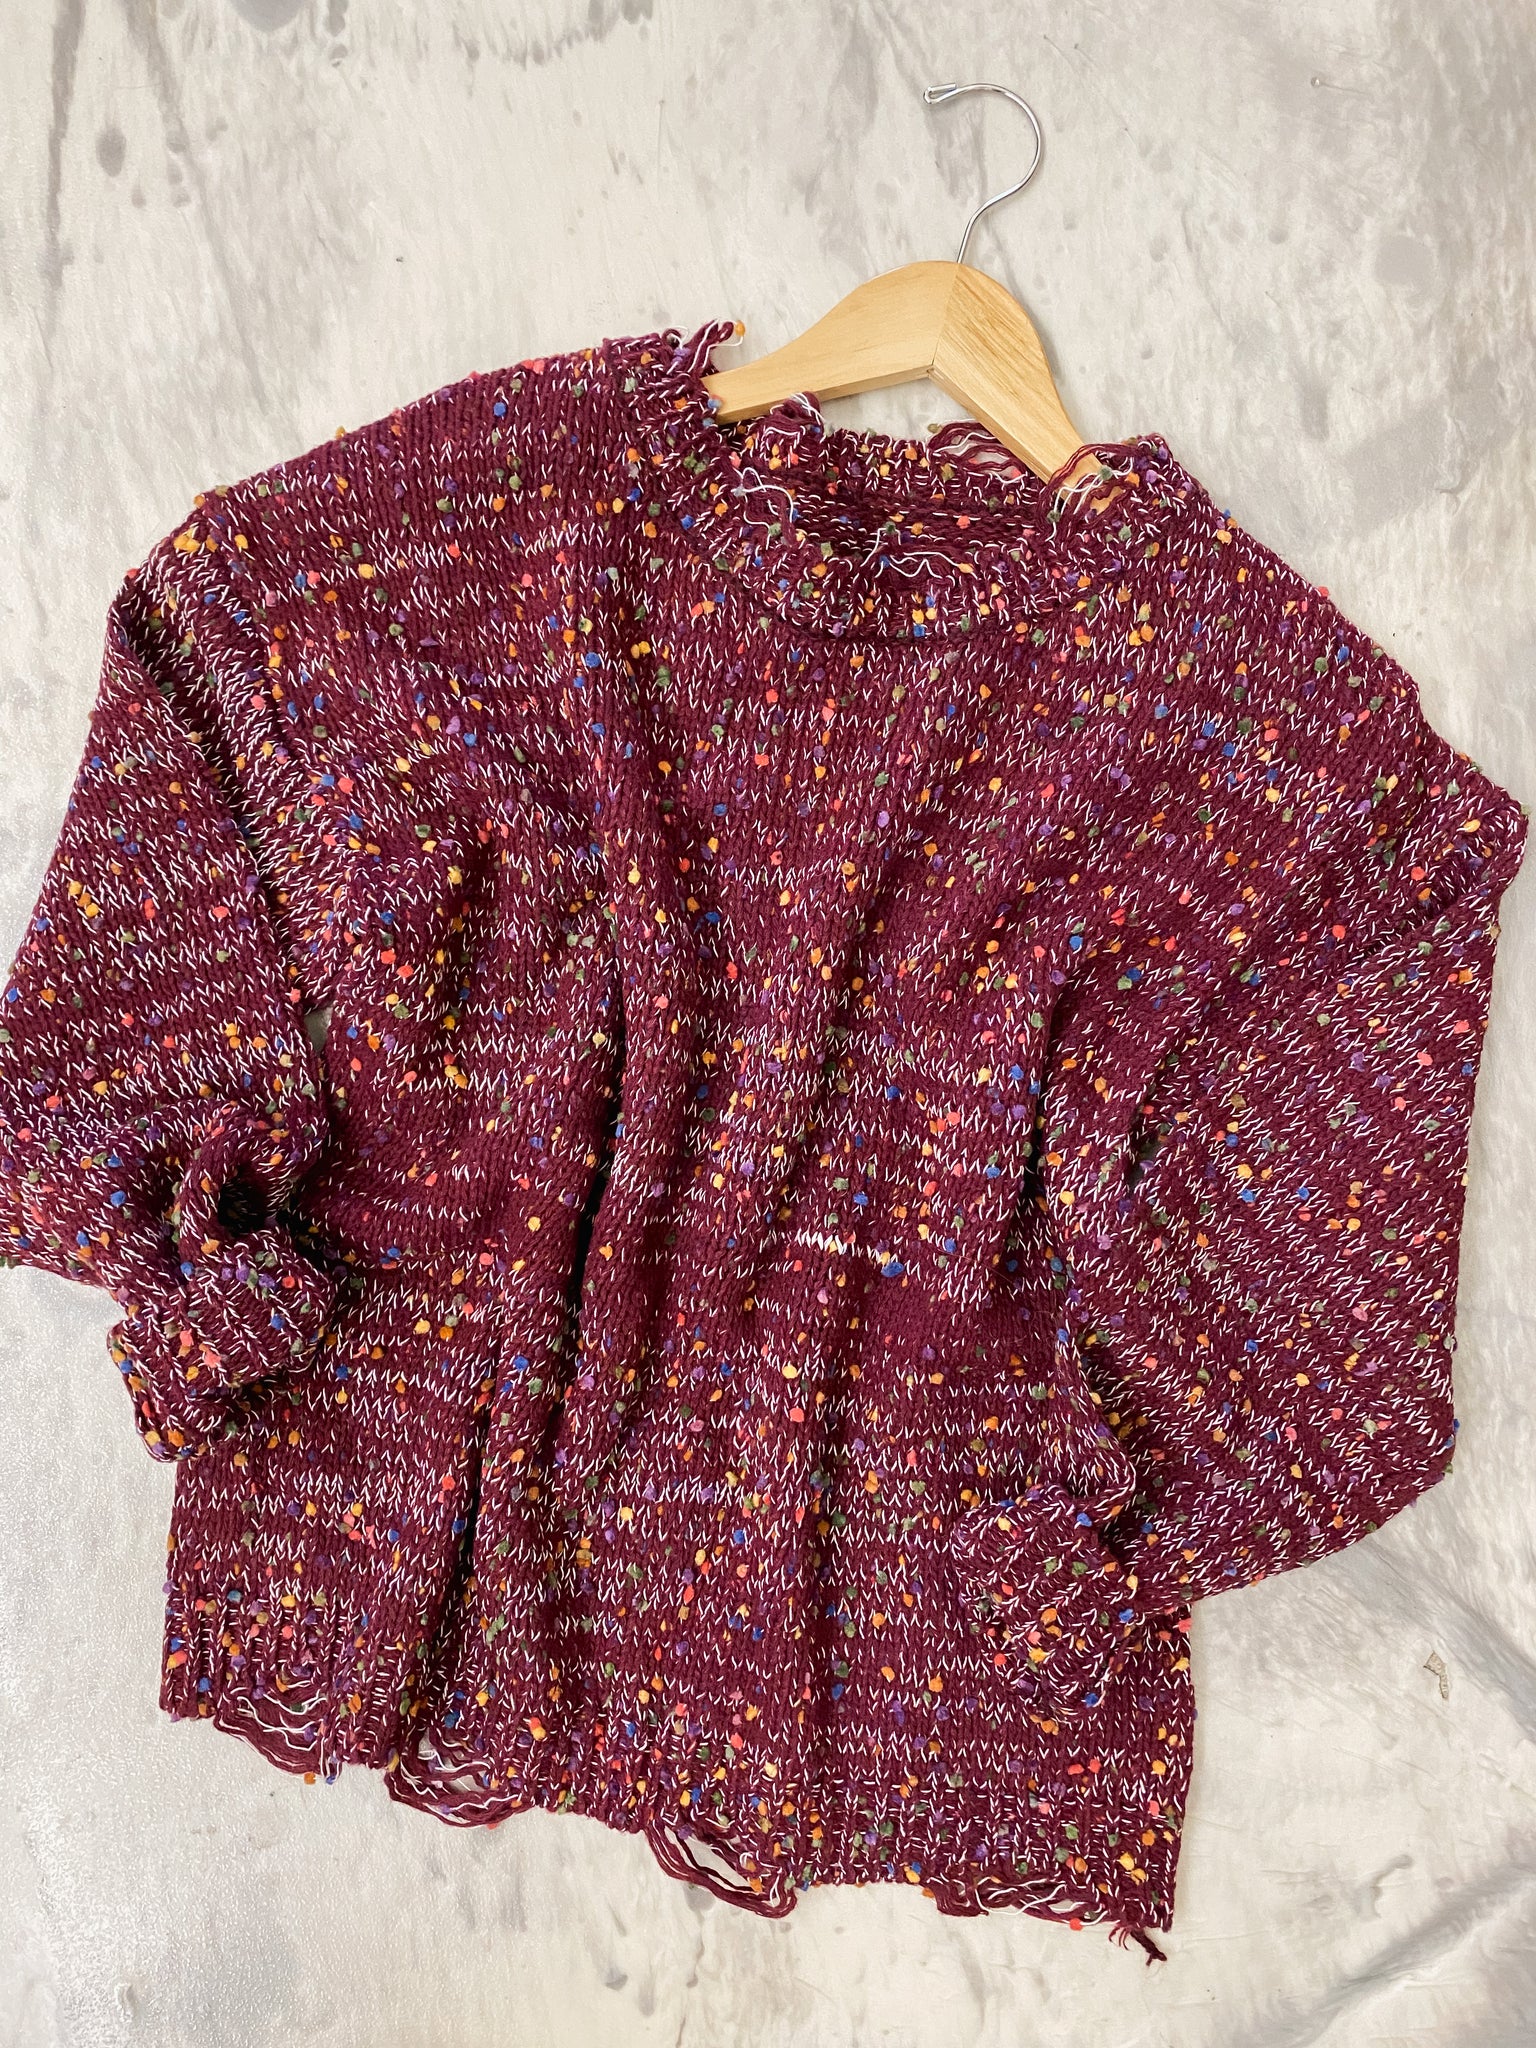 Maroon Confetti Sweater